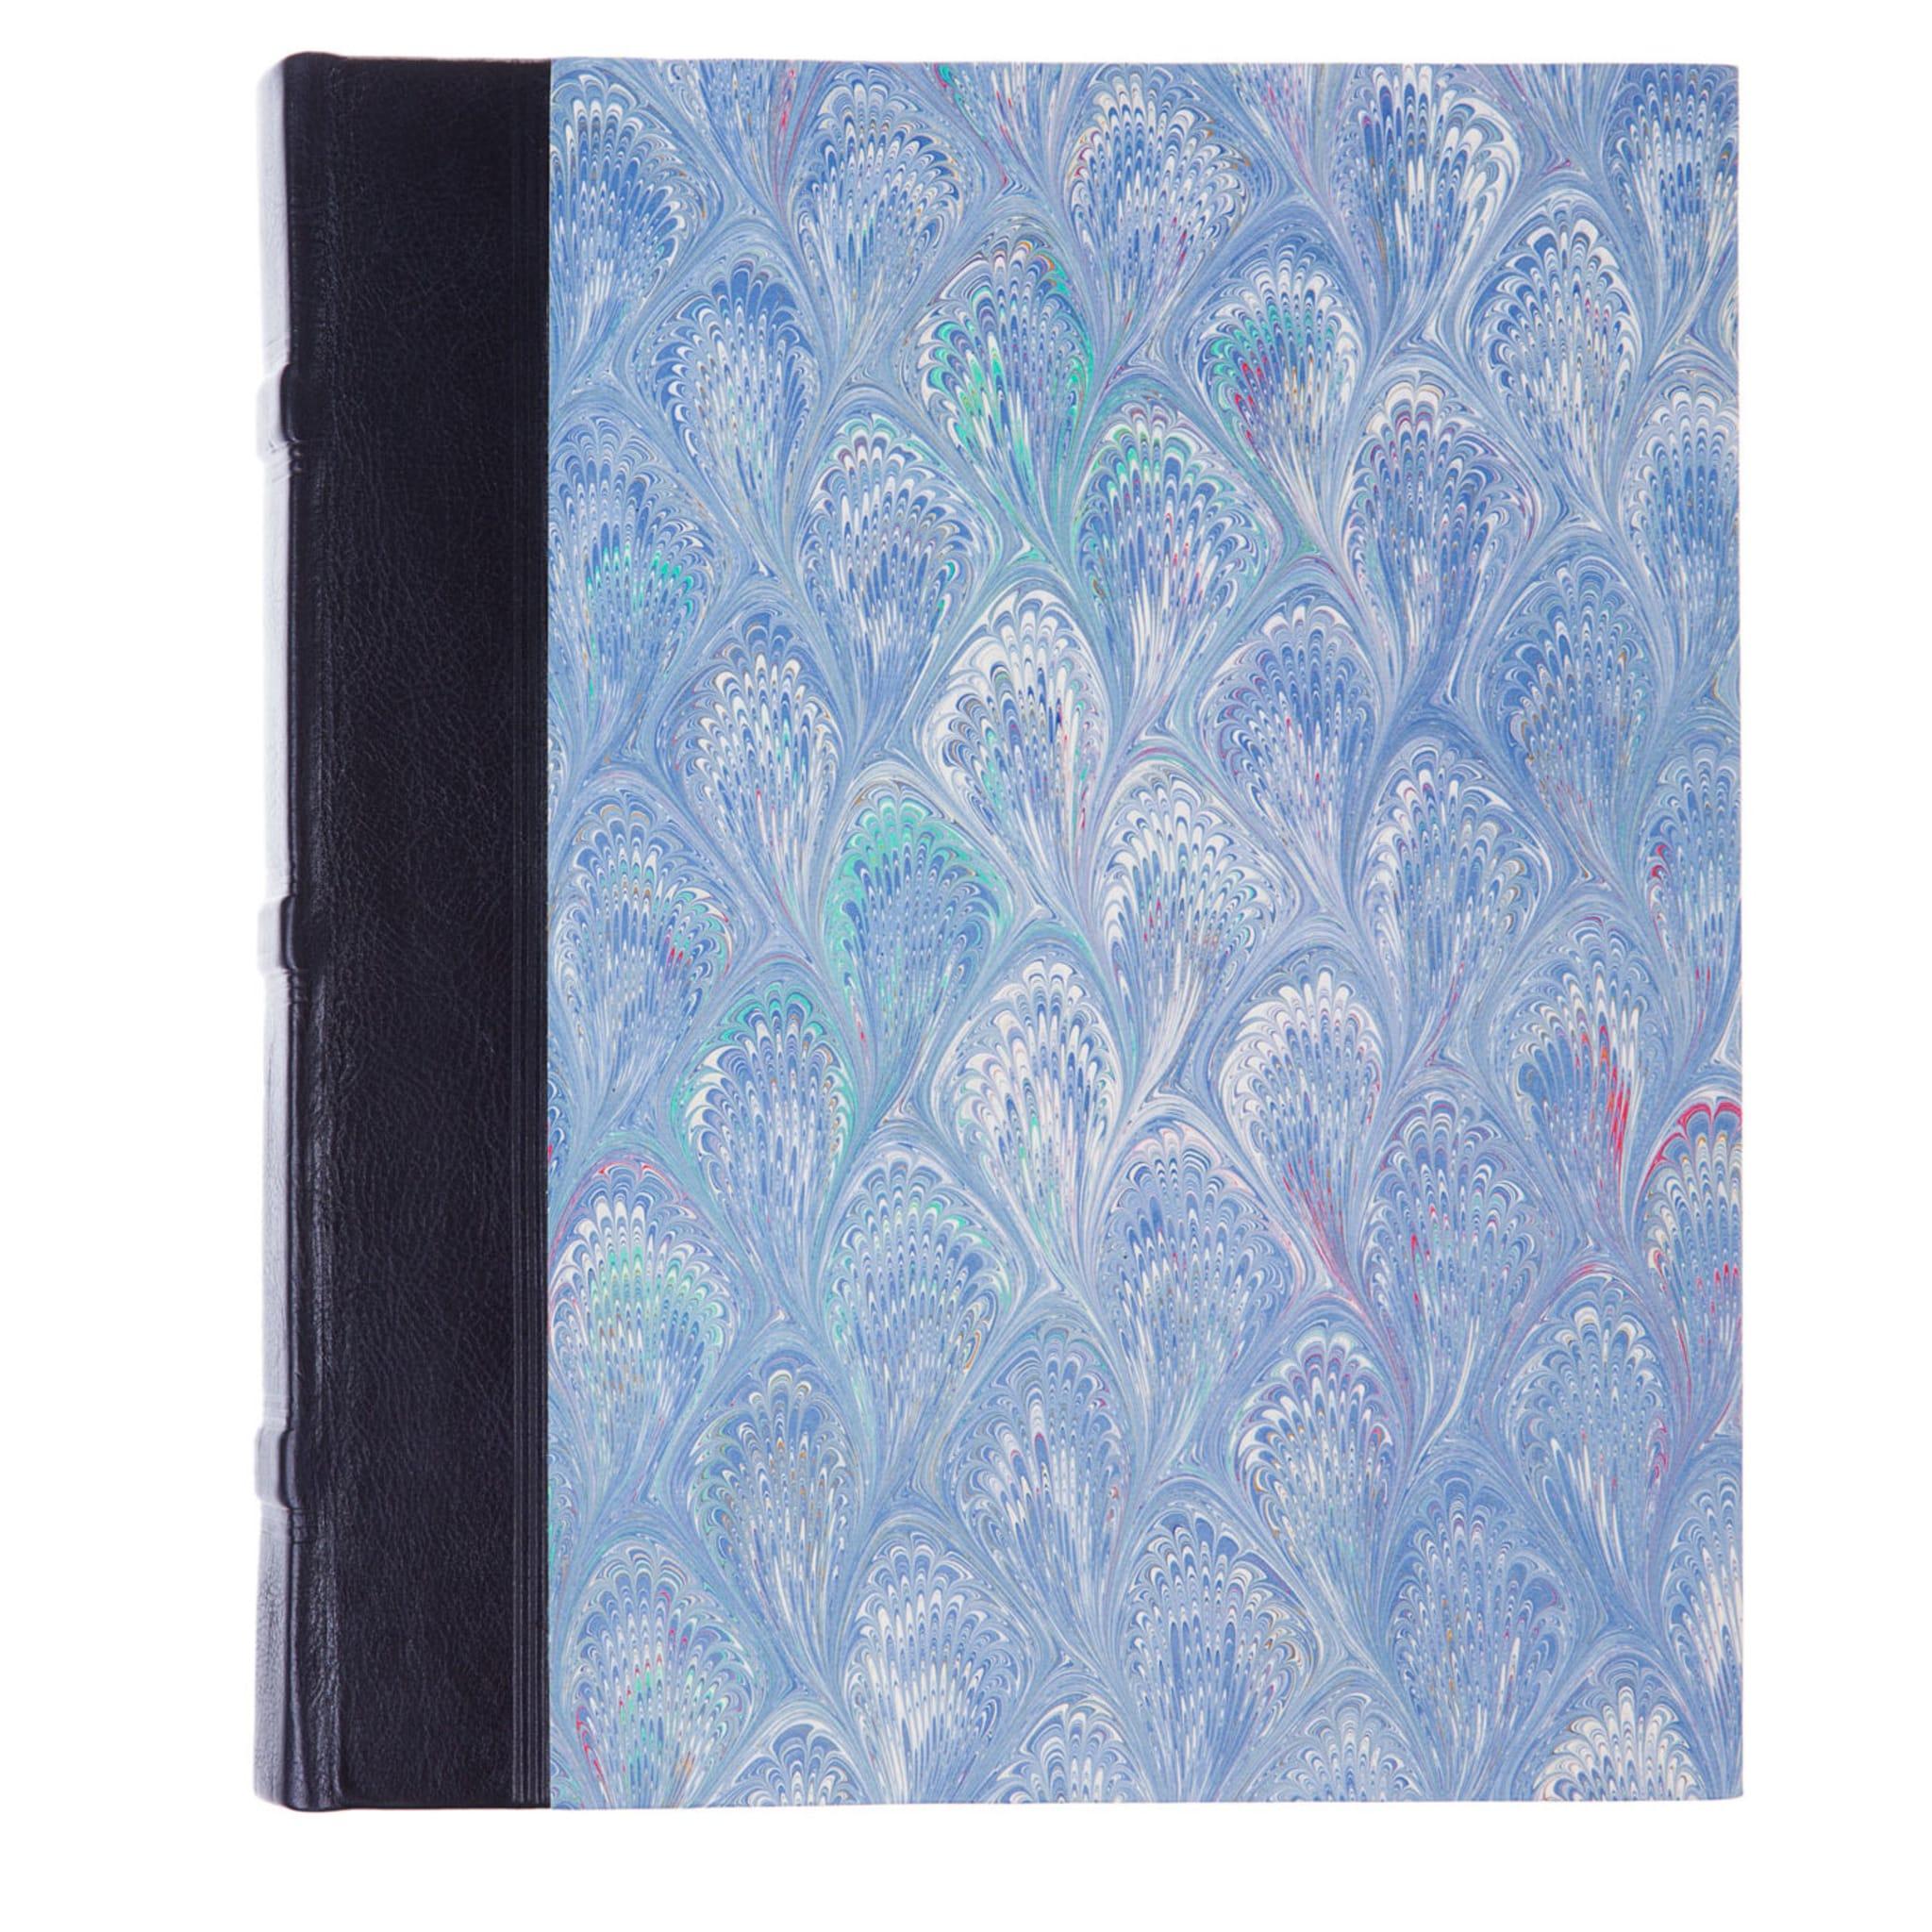 Handgefertigtes Fotoalbum des Florentiner Buchbinders Florentine Giannini mit blauem Lederrücken und wunderschönem Einband aus marmoriertem Papier in verschiedenen hellblauen Farbtönen. Es enthält 30 elfenbeinfarbene Kartenblätter zum Befestigen von